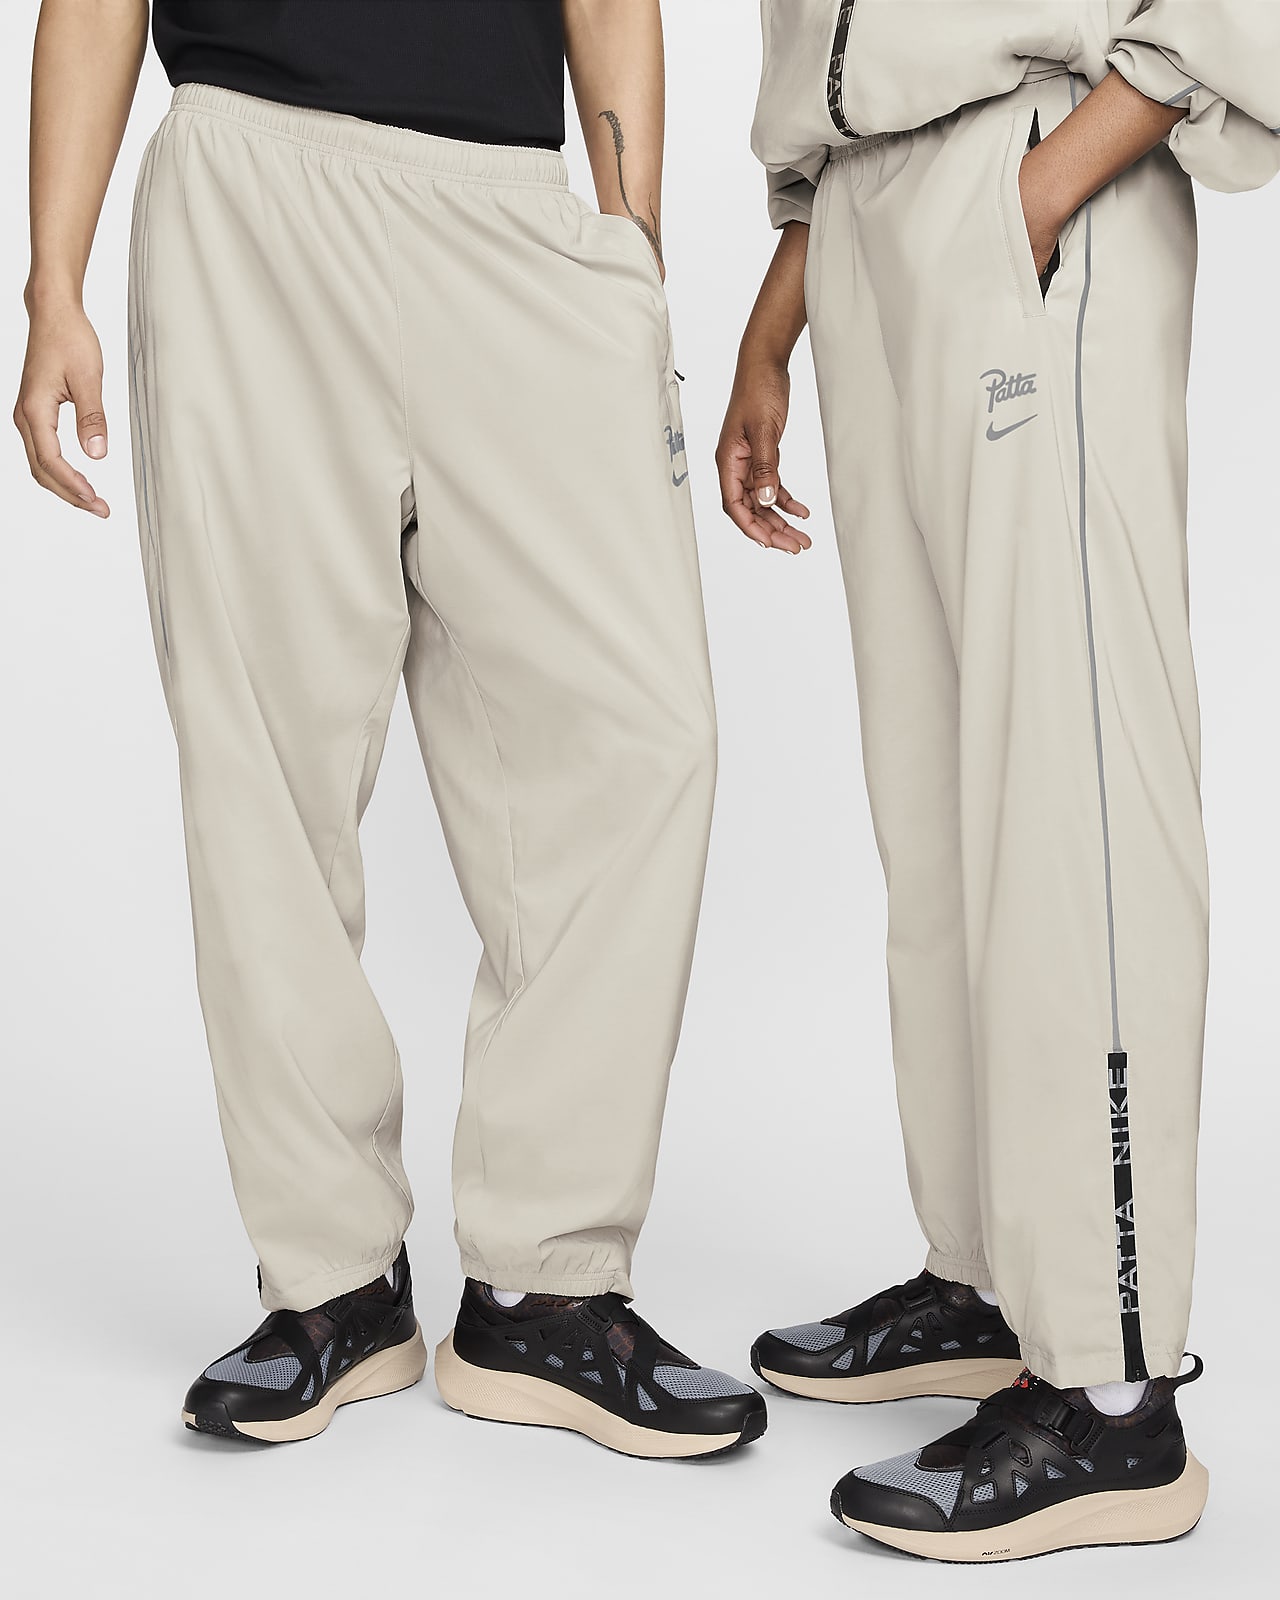 Nike x Patta Men's Track Pants